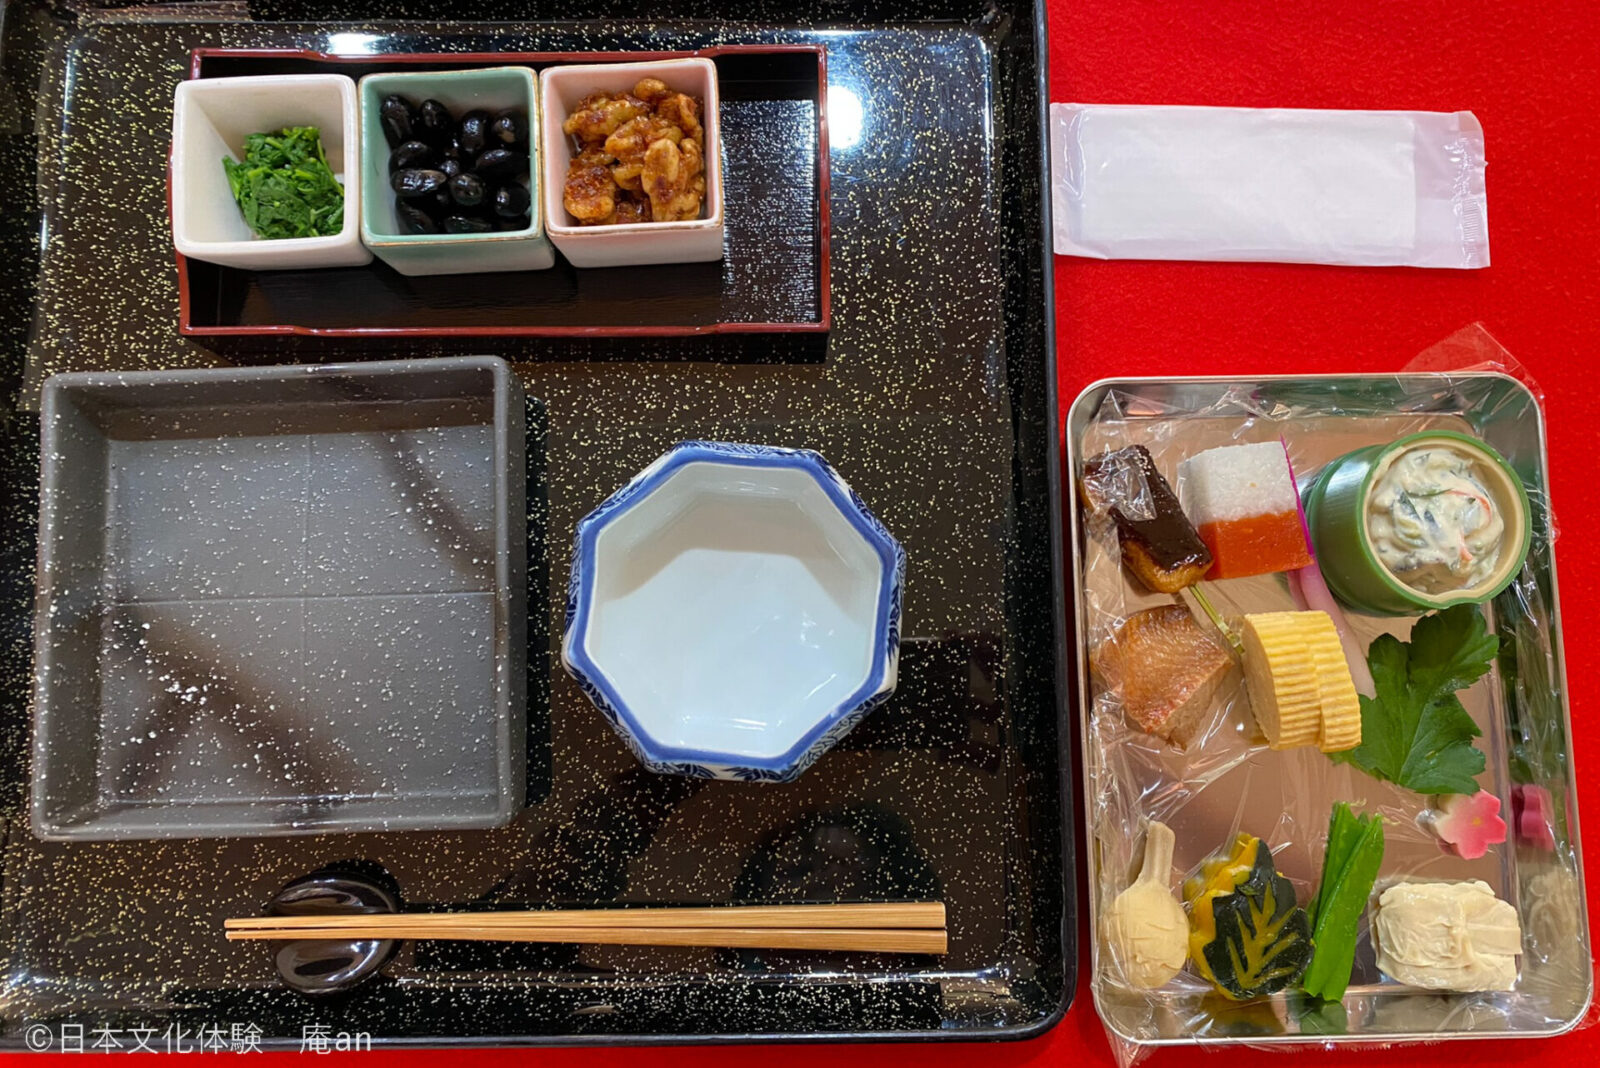 【京都の仕出し文化を体験】京都で味わう老舗仕出し割烹の会席盛り付け体験 画像4